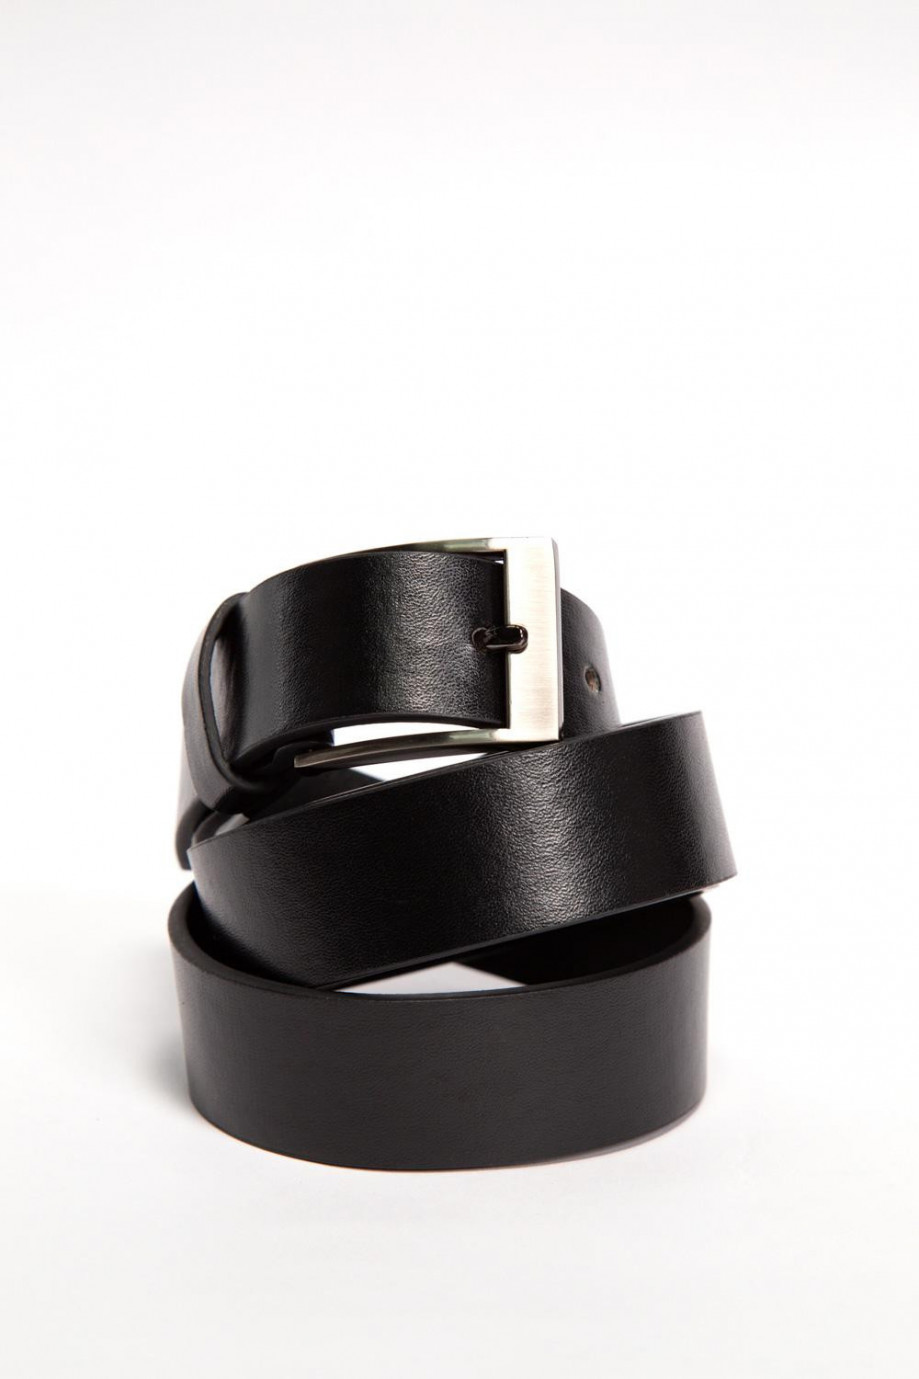 Cinturón negro en cuerina con hebilla metálica cuadrada